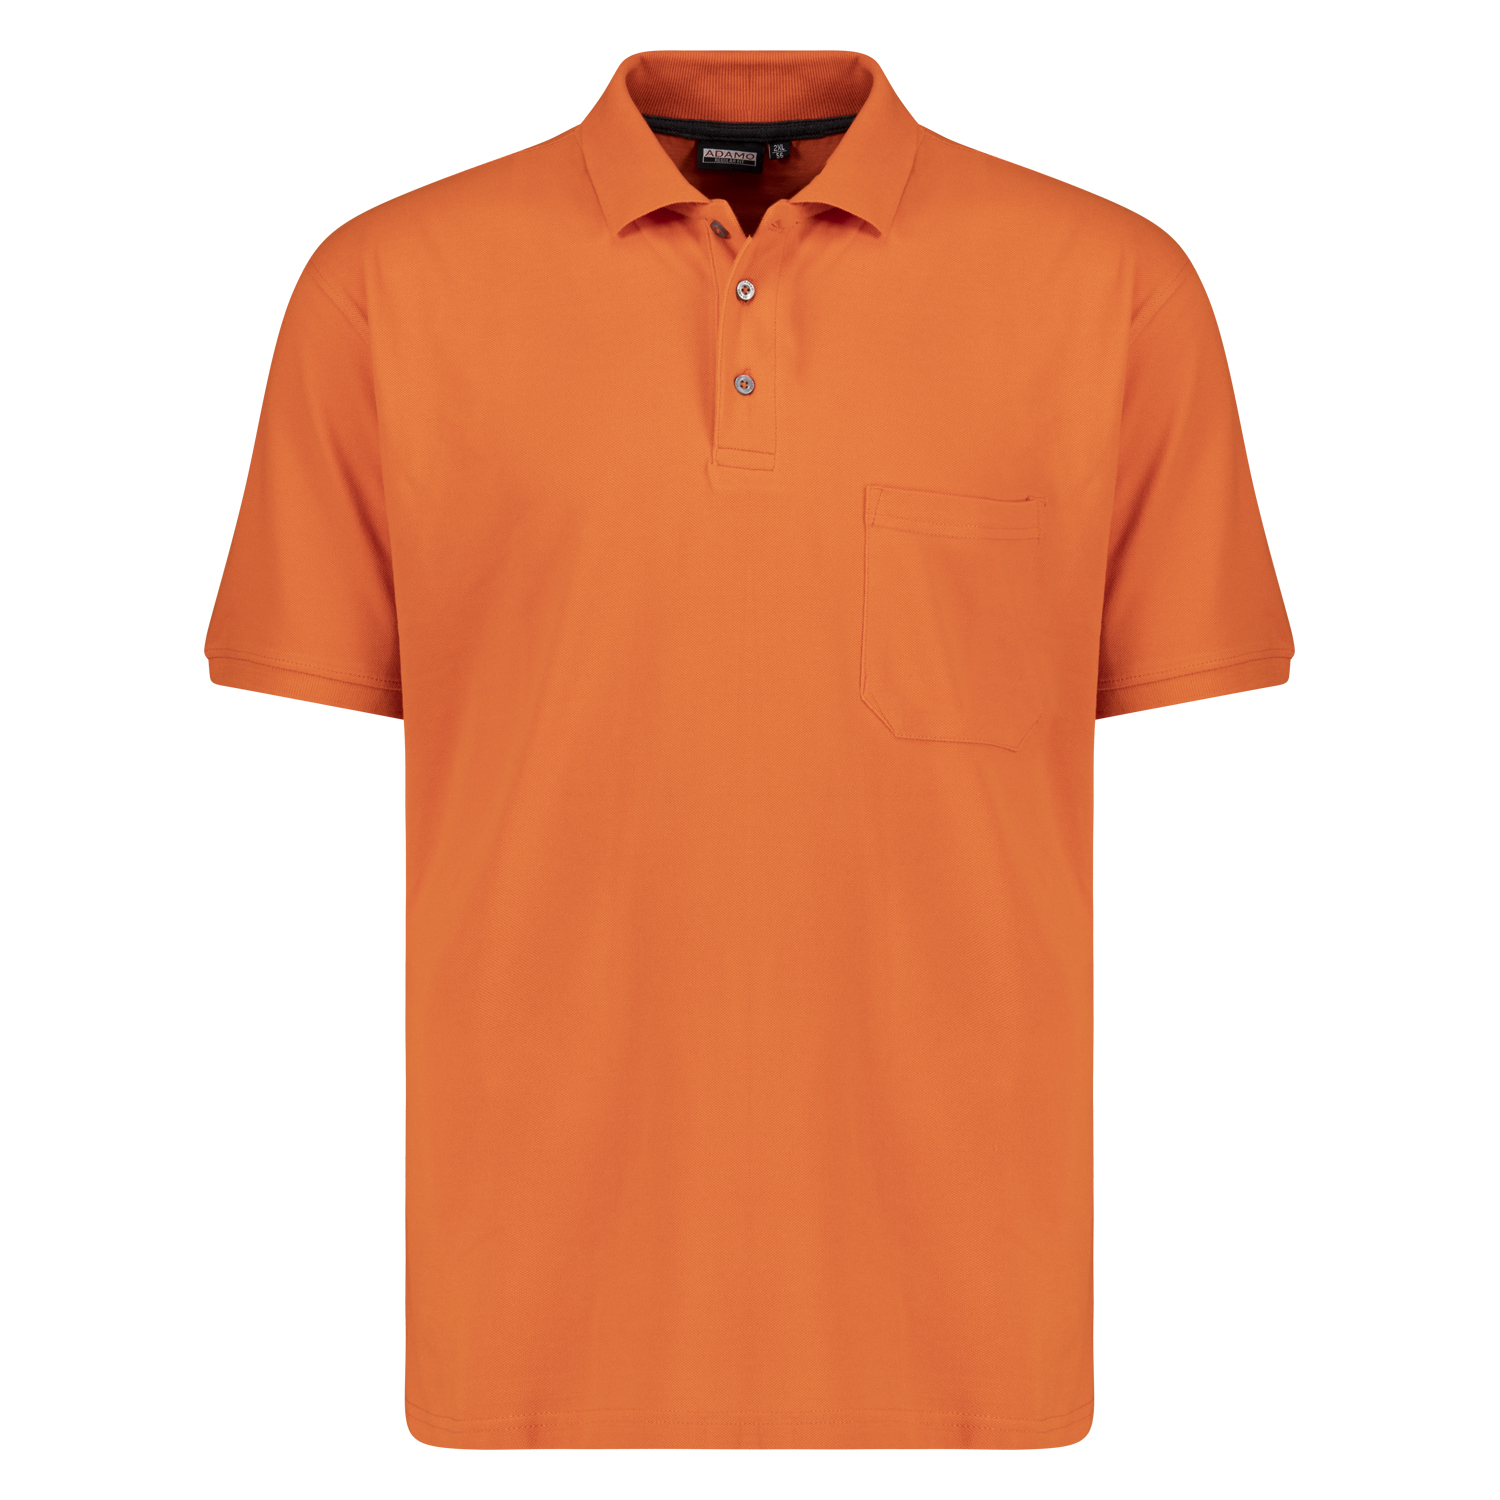 Orange farbenes kurzarm Polo Shirt KLAAS von ADAMO in Pique Qualität für Herren in großen Größen bis 10XL